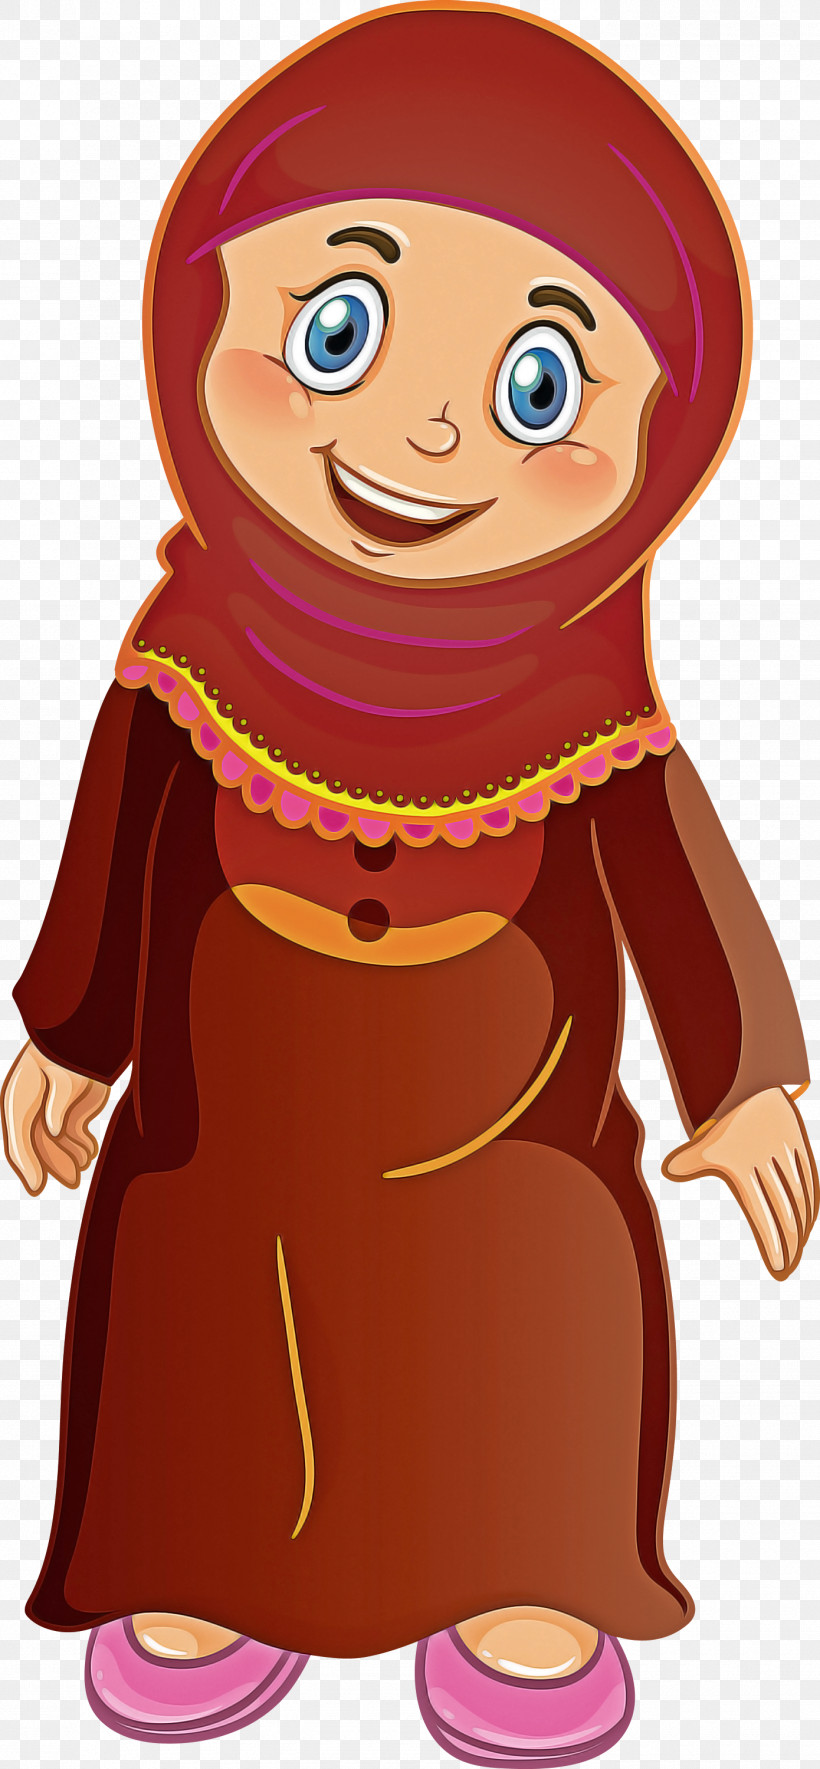 Muslim People, PNG, 1390x3000px, Muslim People, Animation, Cartoon, Gesture, Smile Download Free